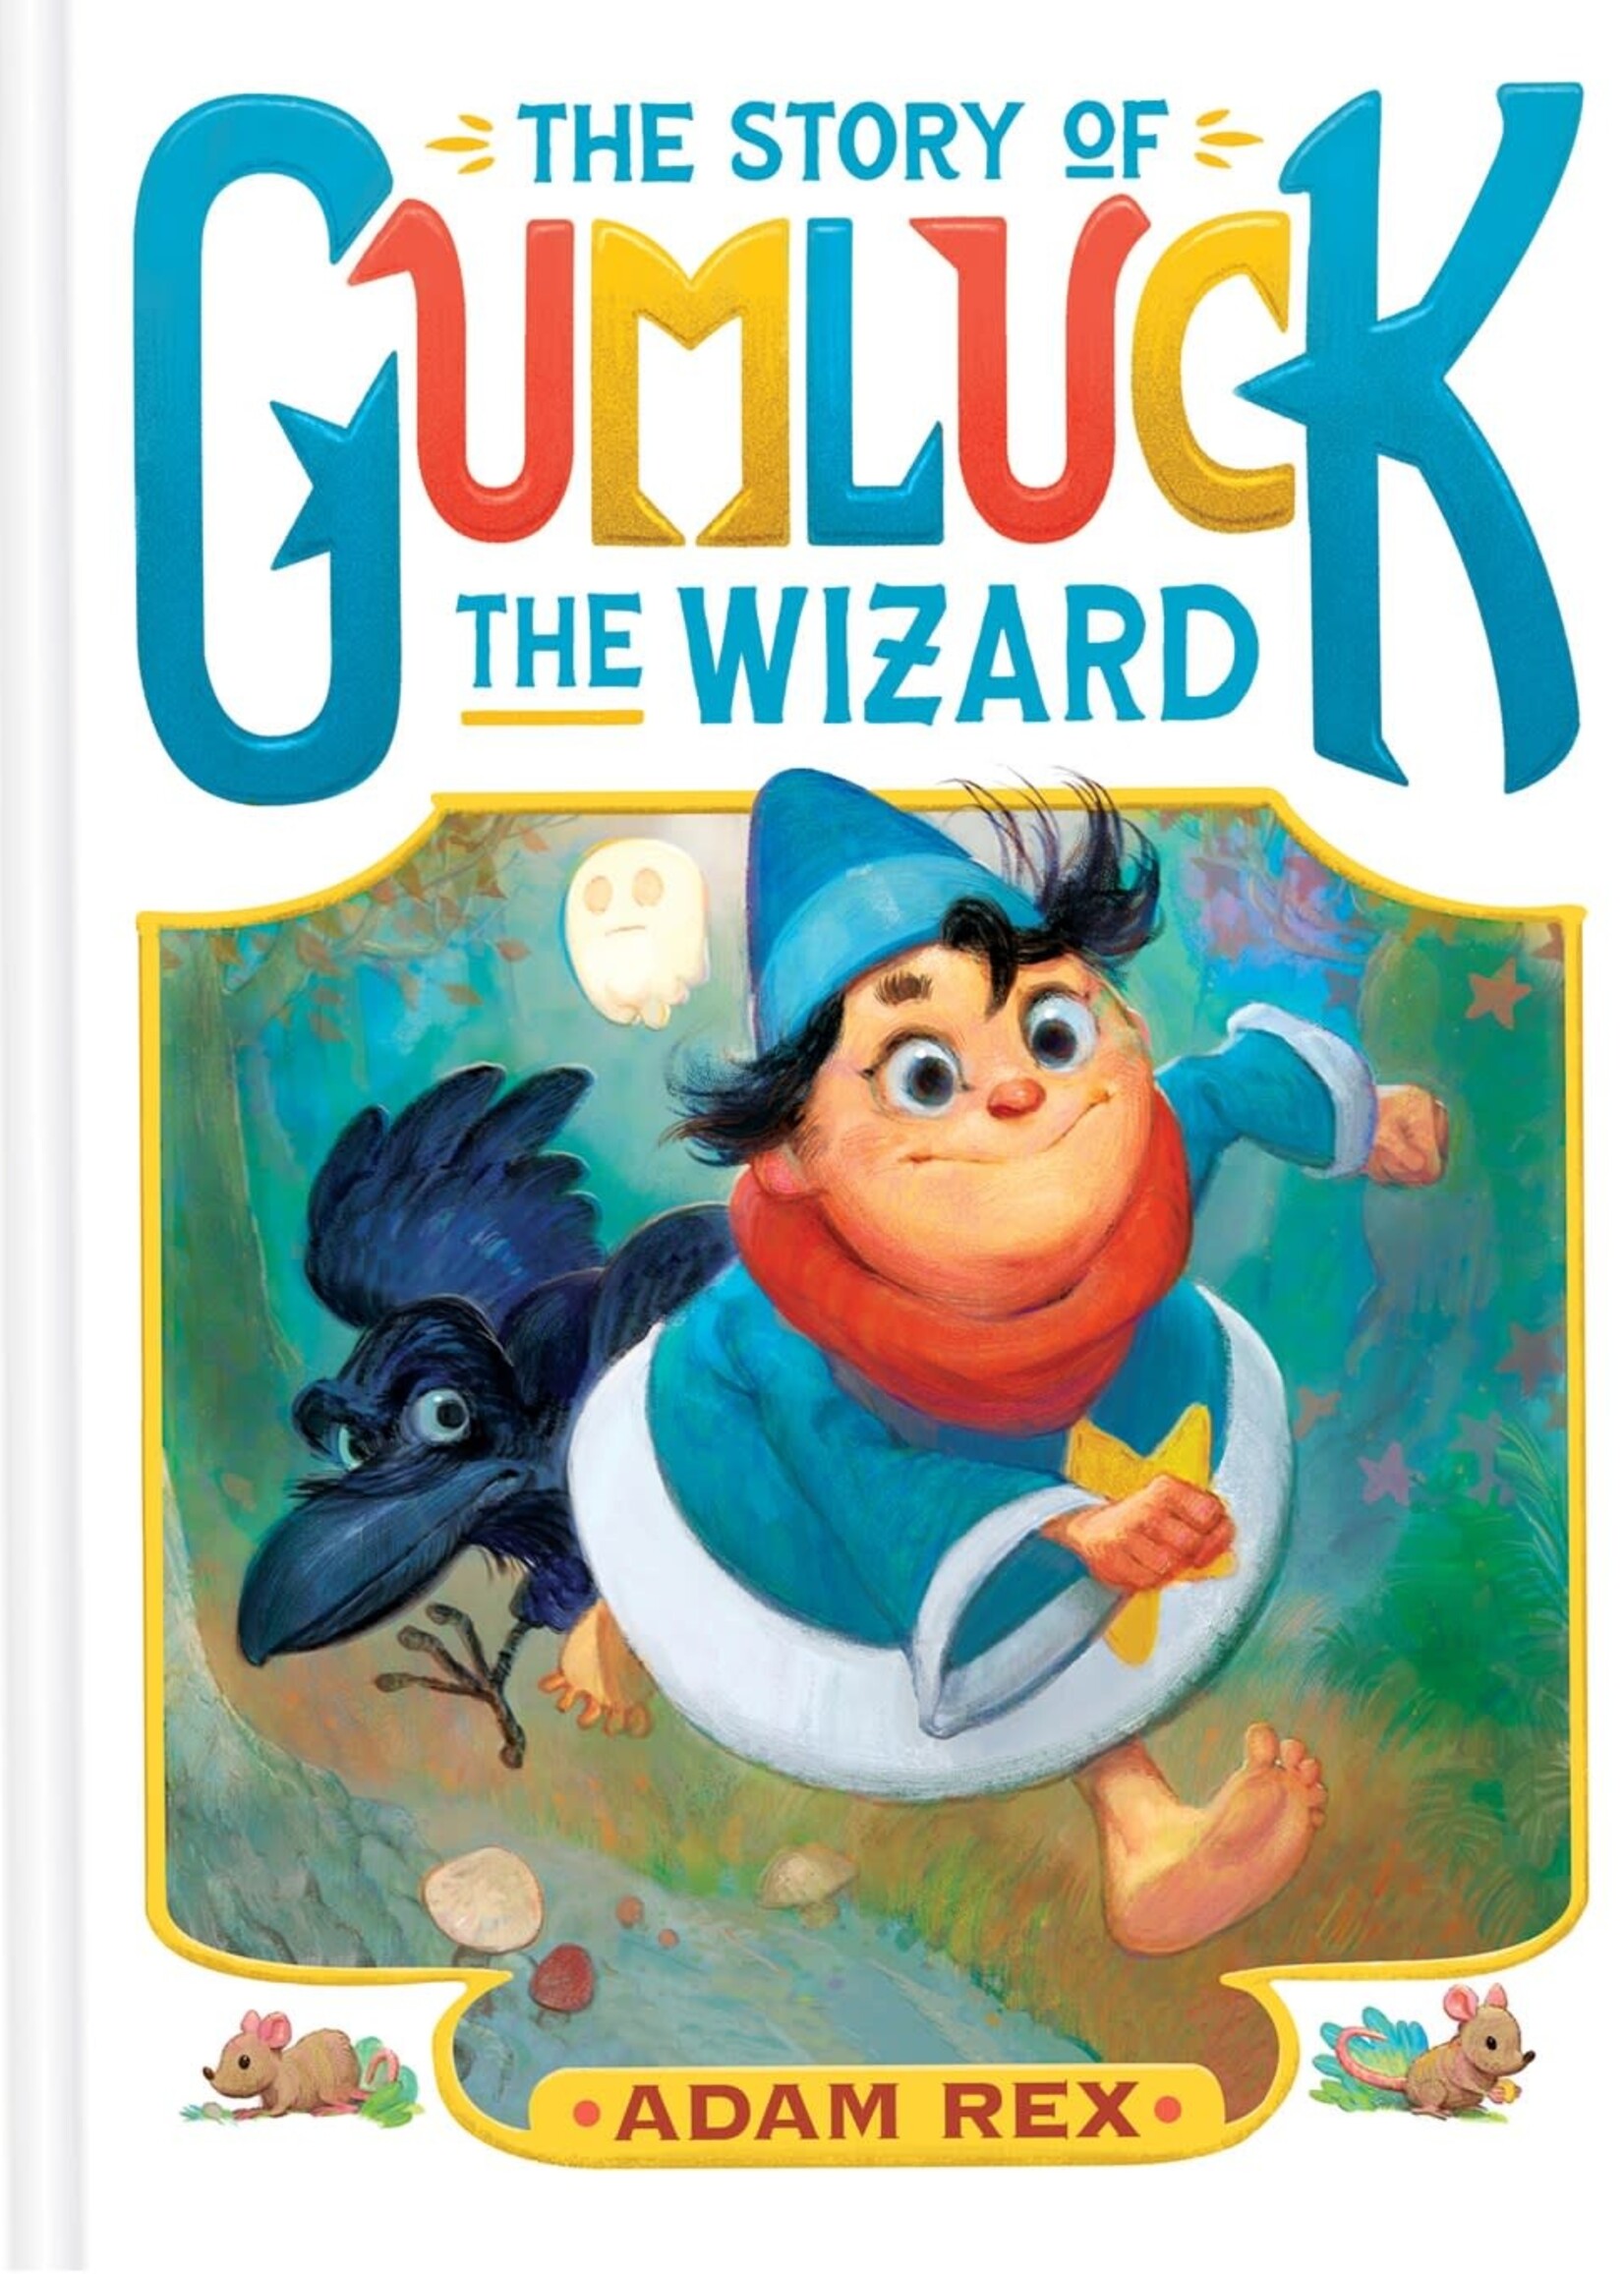 Story of Gumluck the Wizard 1